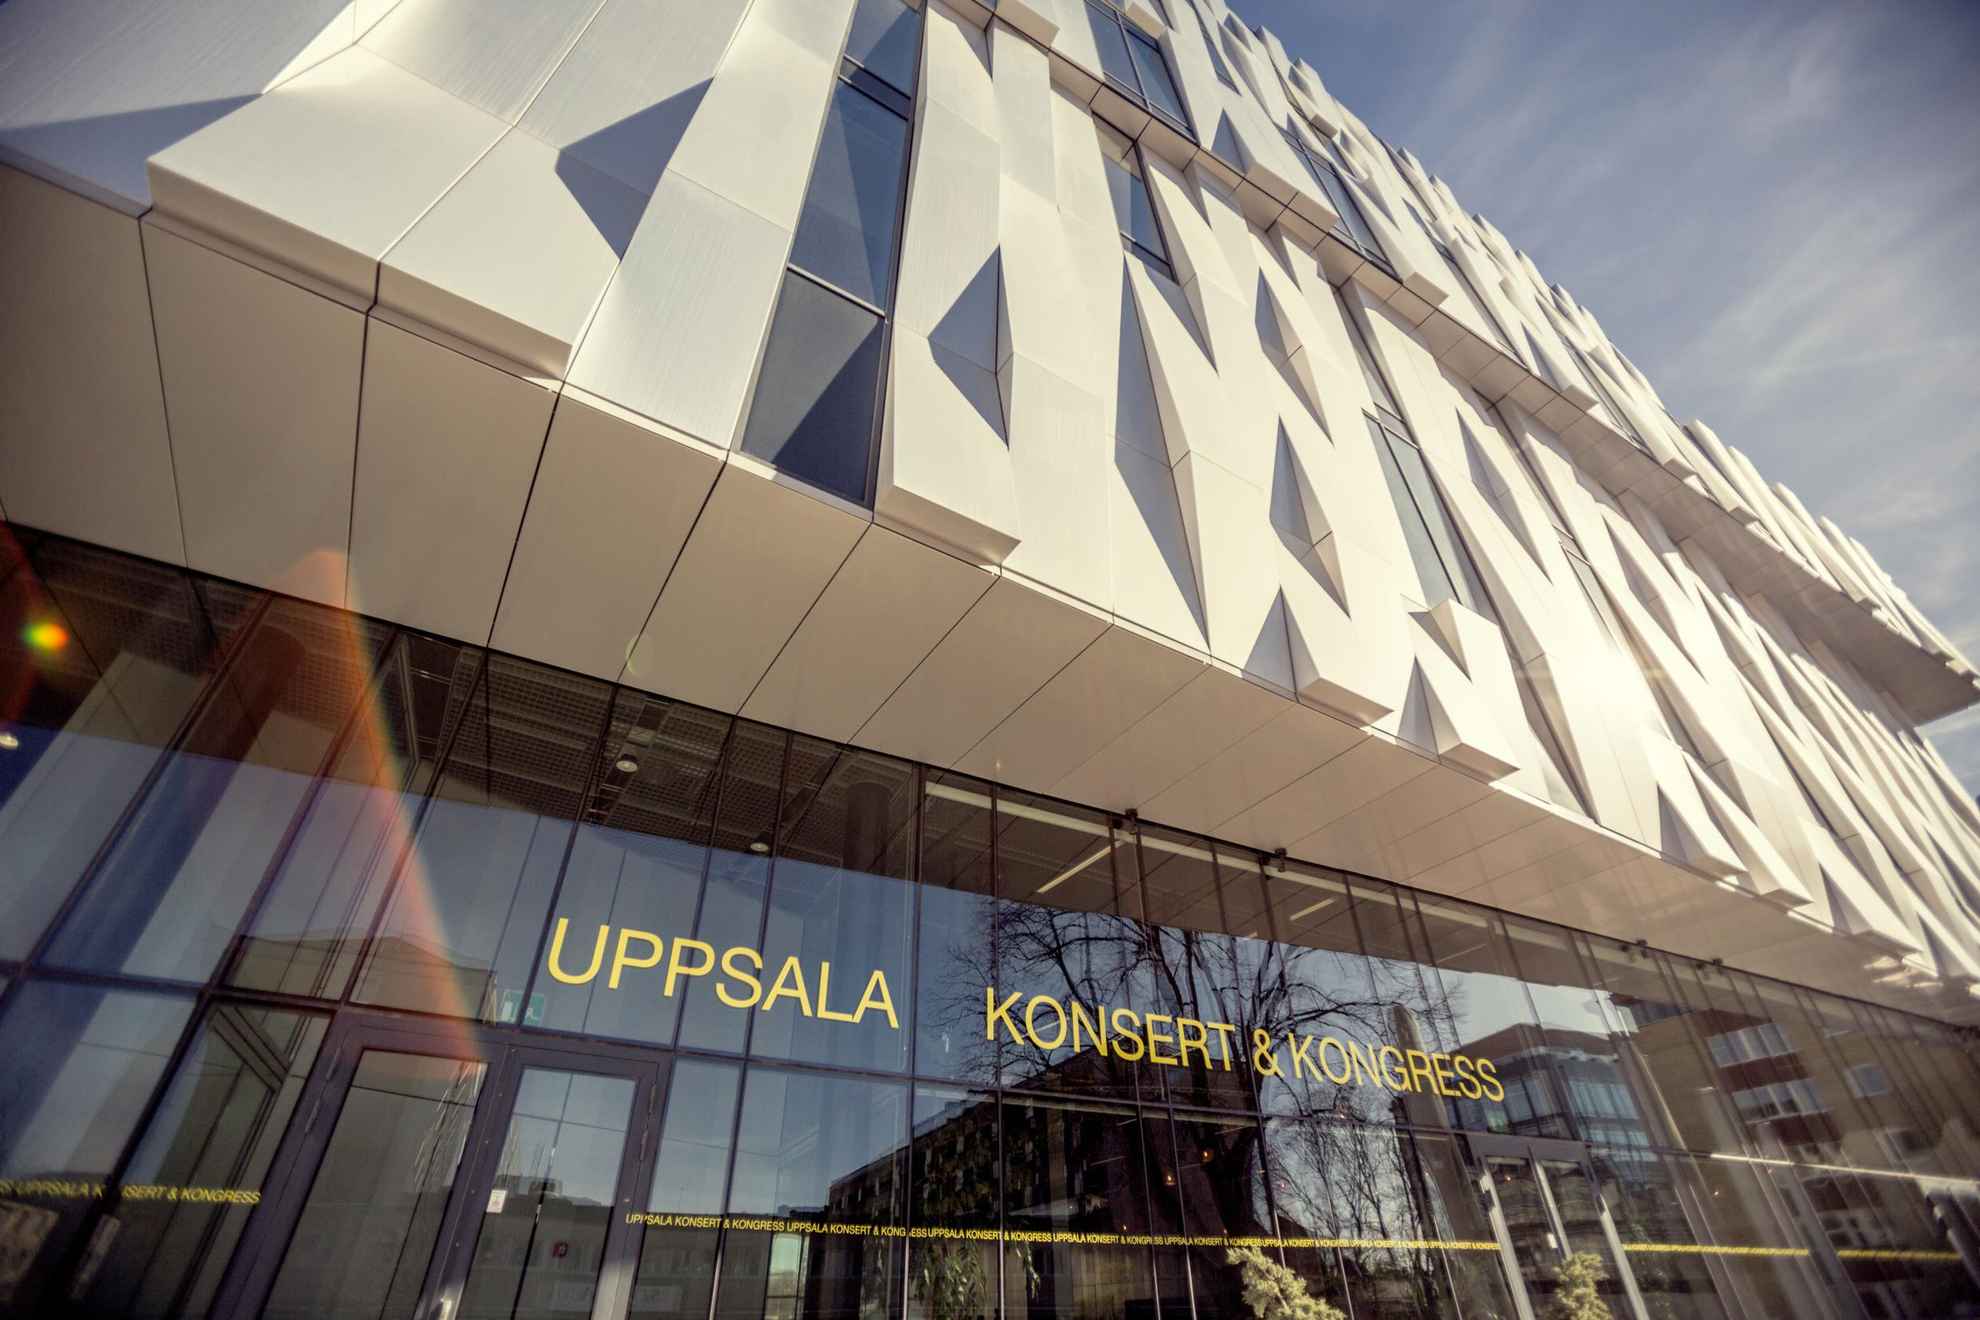 Een close beeld op een onderscheidend gebouw, met een kristalachtige gevel bestaande uit reflecterende metalen platen. Bij de raammuur op de benedenverdieping staat een bord met de tekst Uppsala Konsert & Kongress.